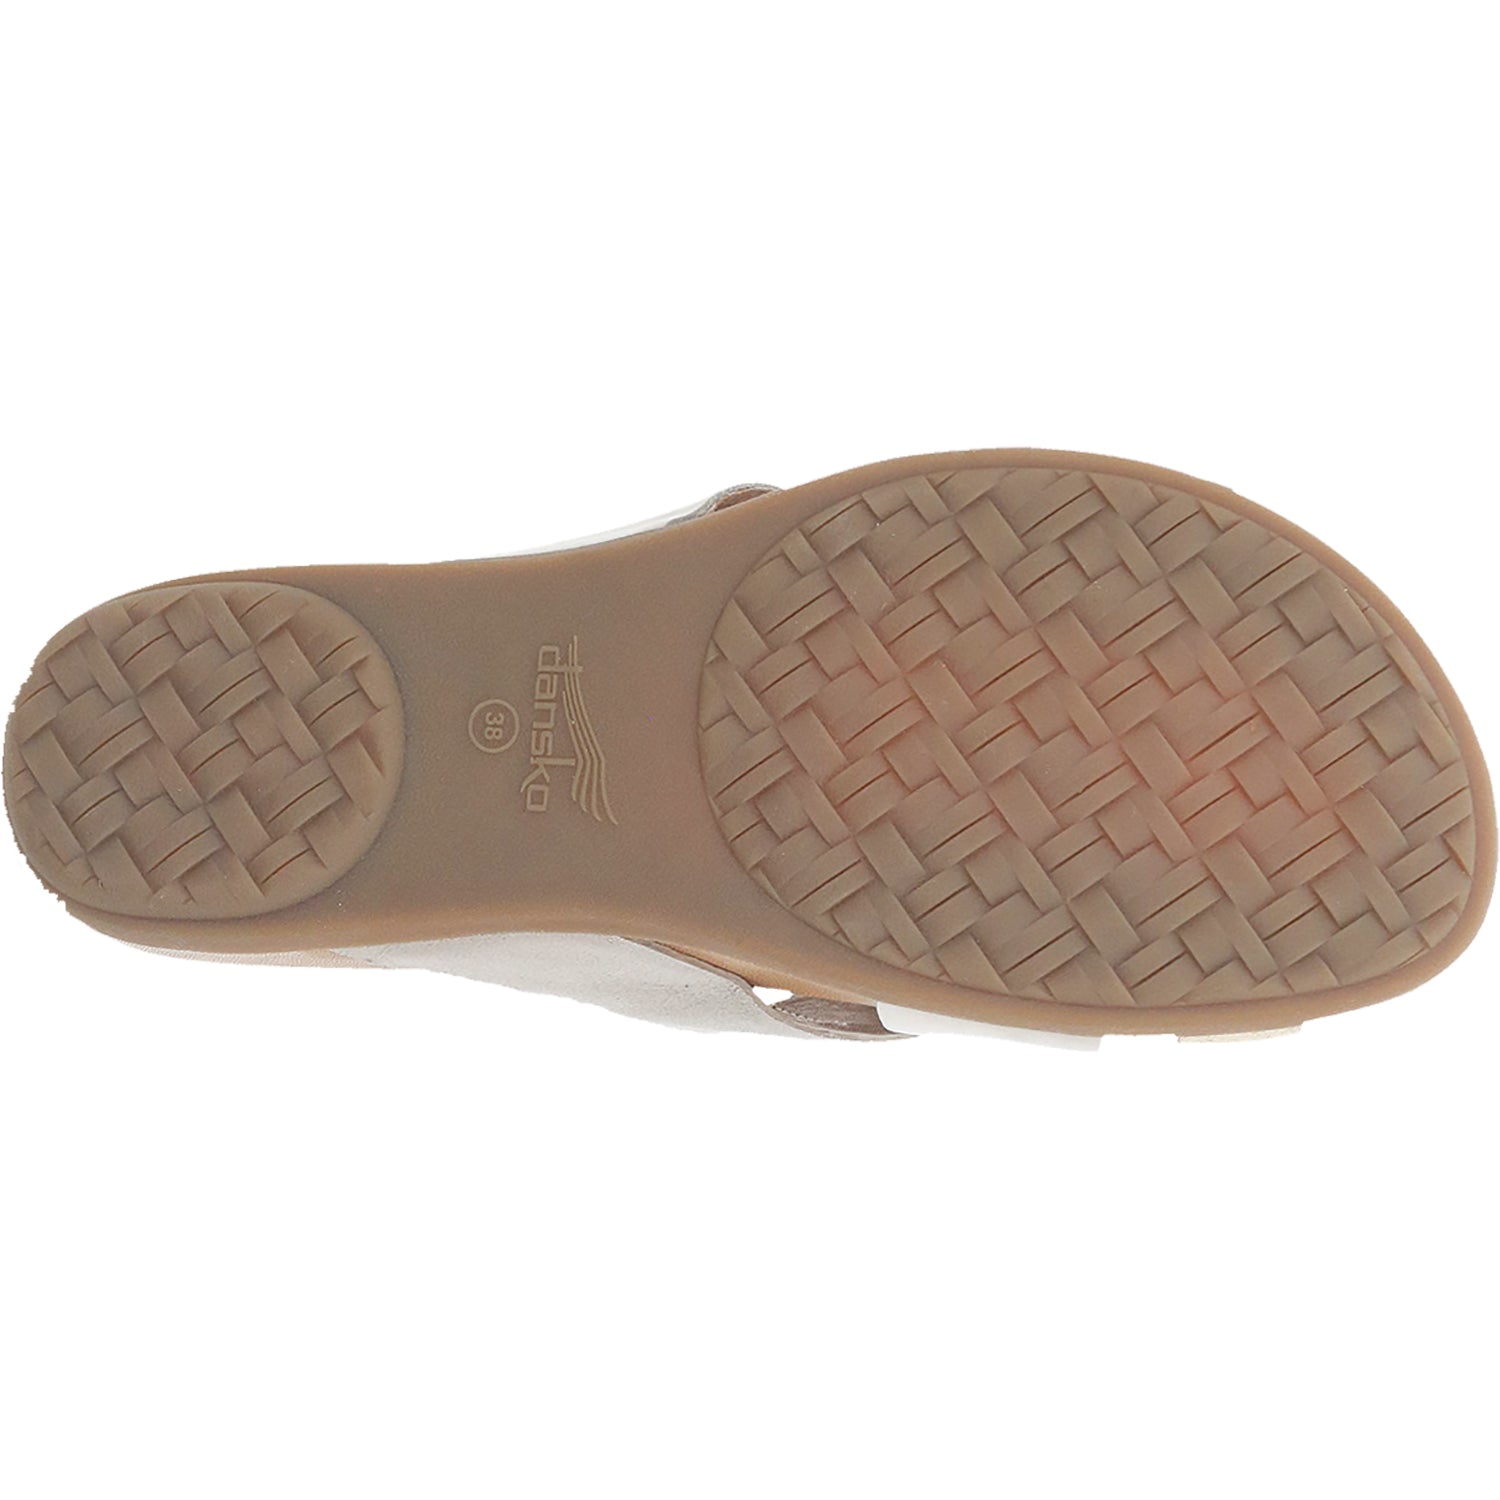 Dansko Joanna Sand | Women's Slide Sandals | Footwear etc.